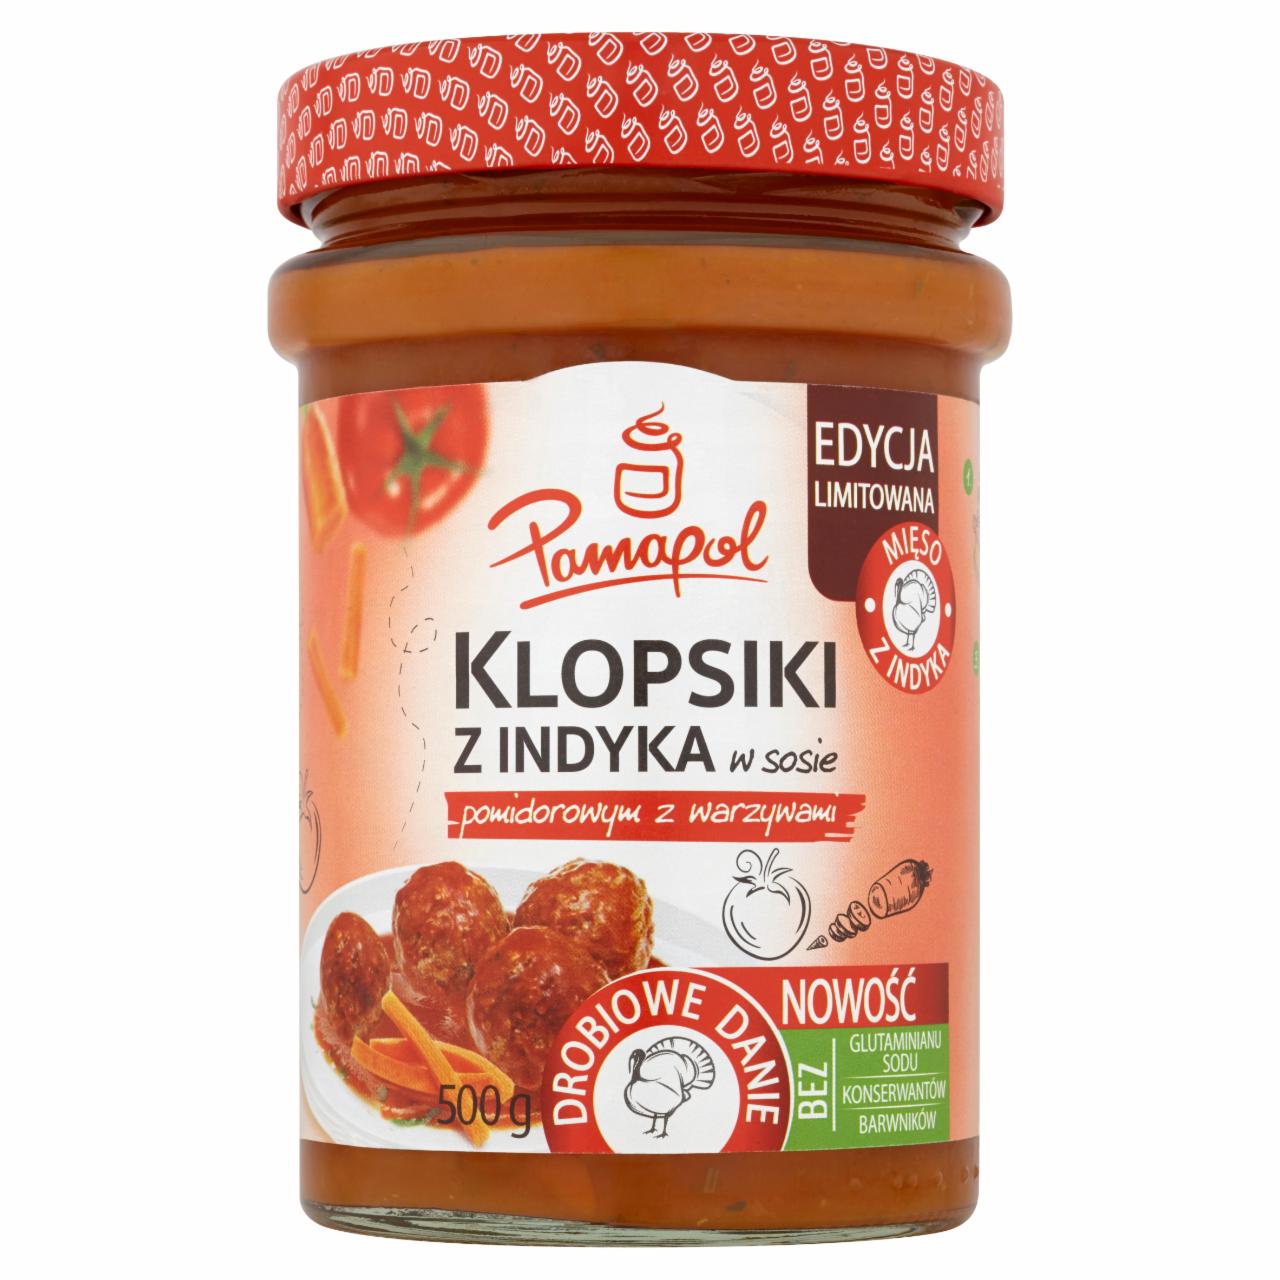 Zdjęcia - Pamapol Klopsiki z indyka w sosie pomidorowym z warzywami 500 g